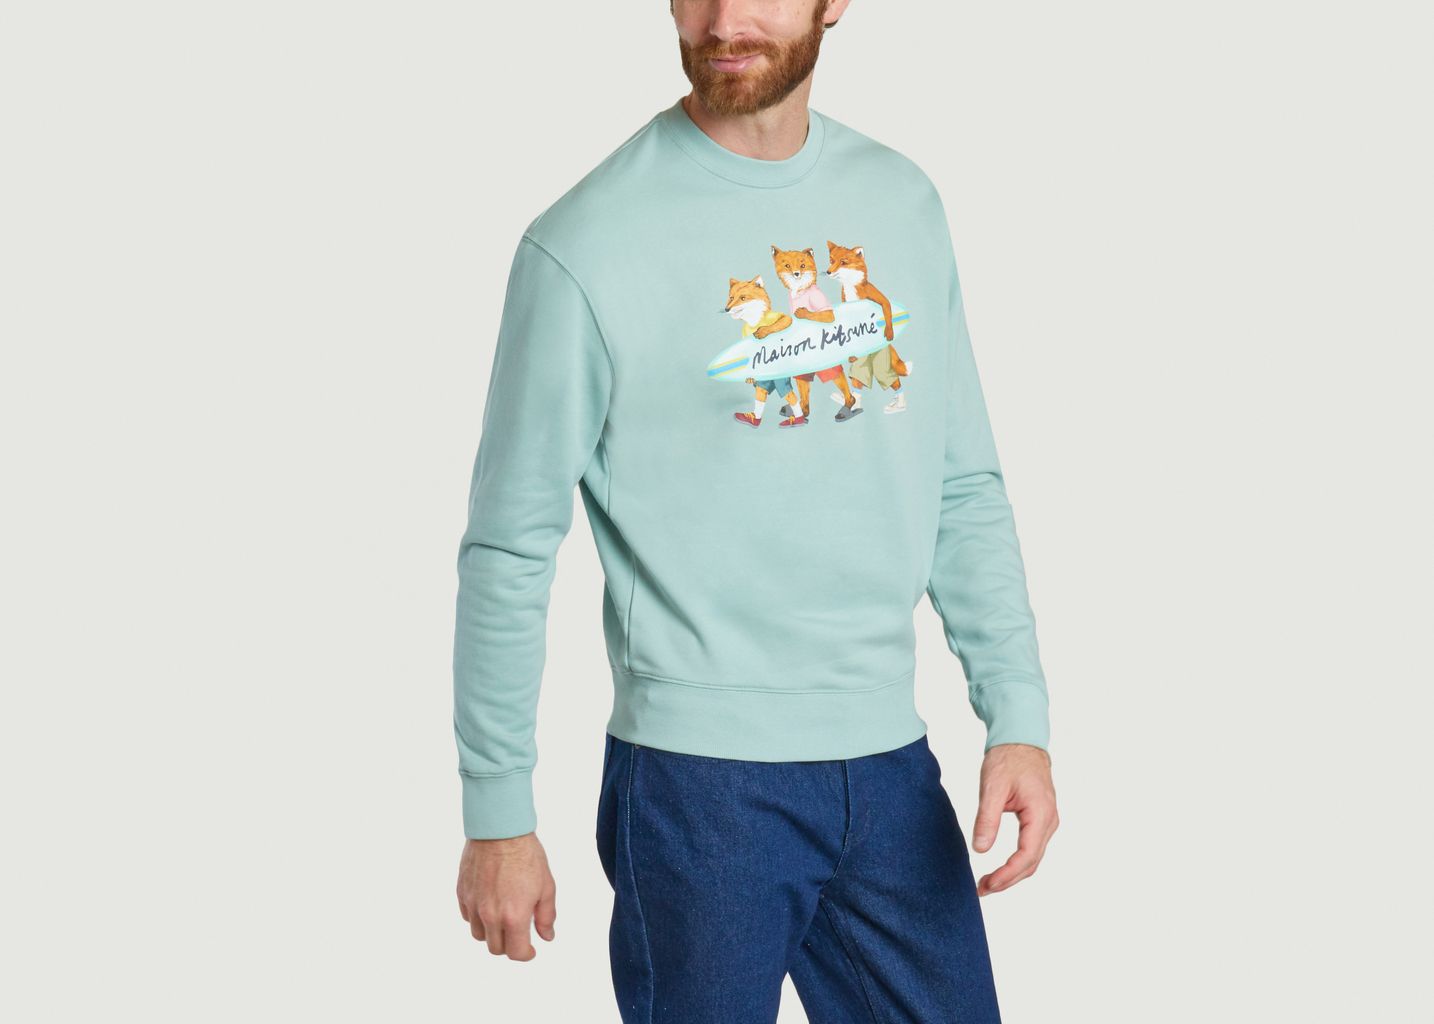 Surfing Foxes sweatshirt - Maison Kitsuné